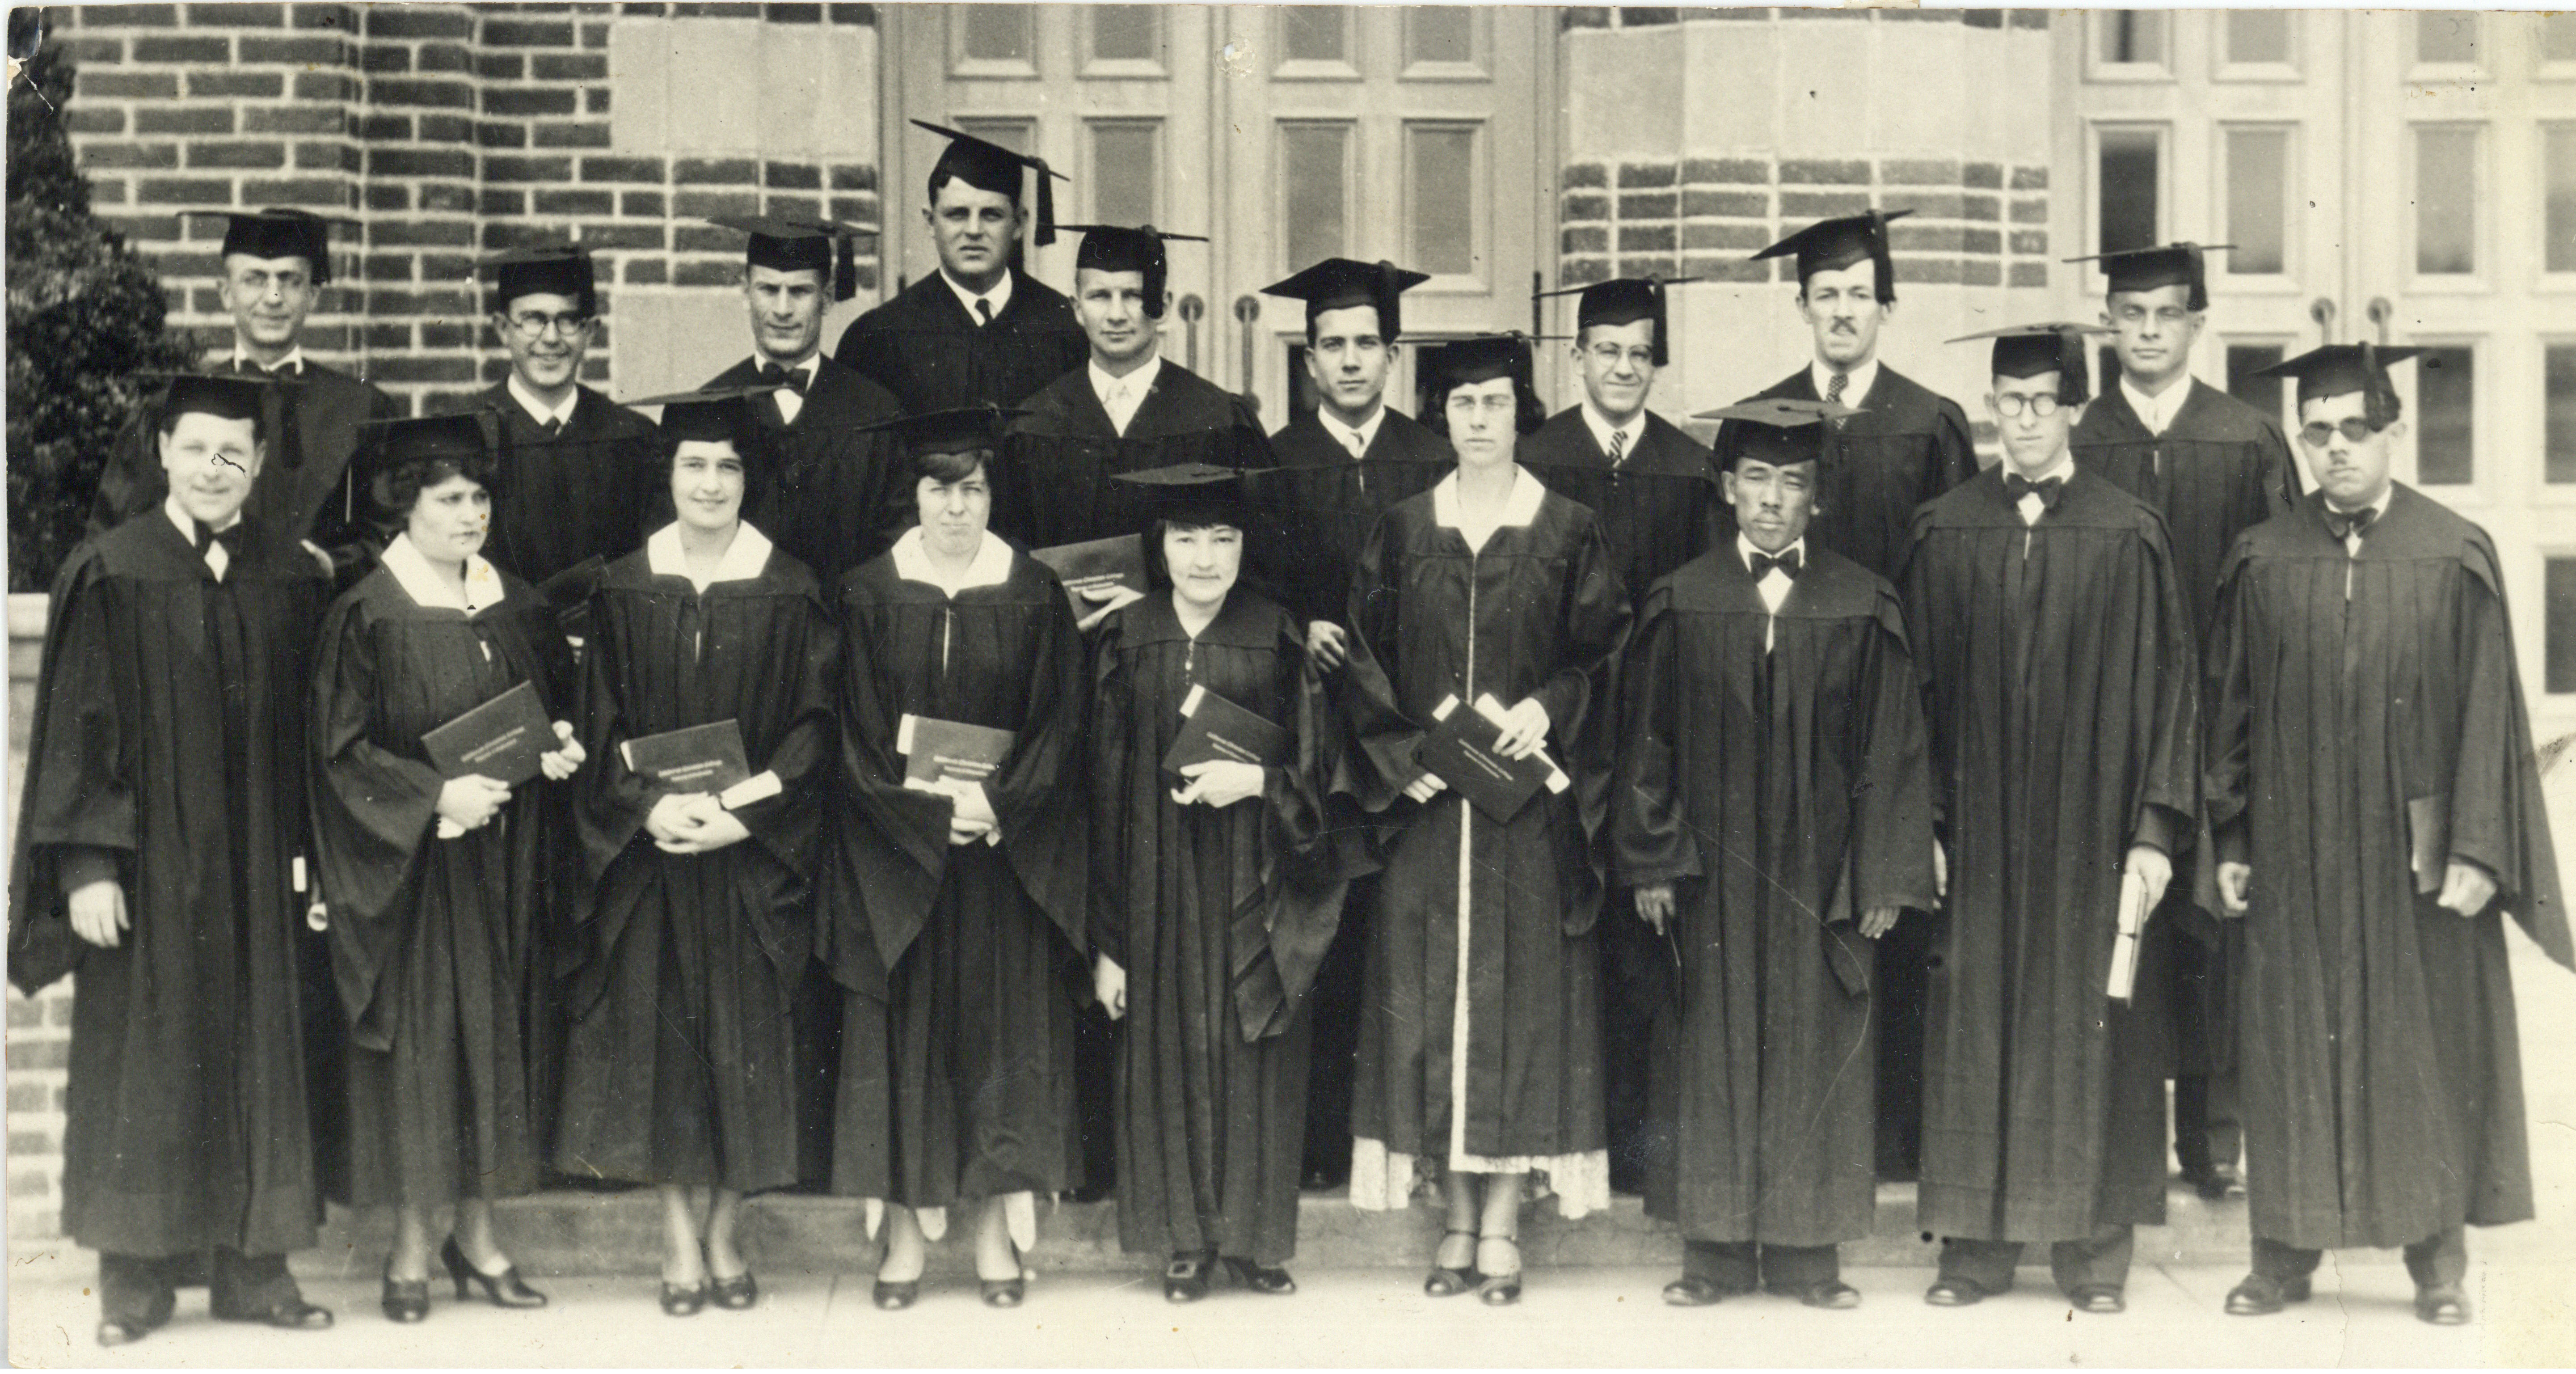 graduating class standing with diplomas